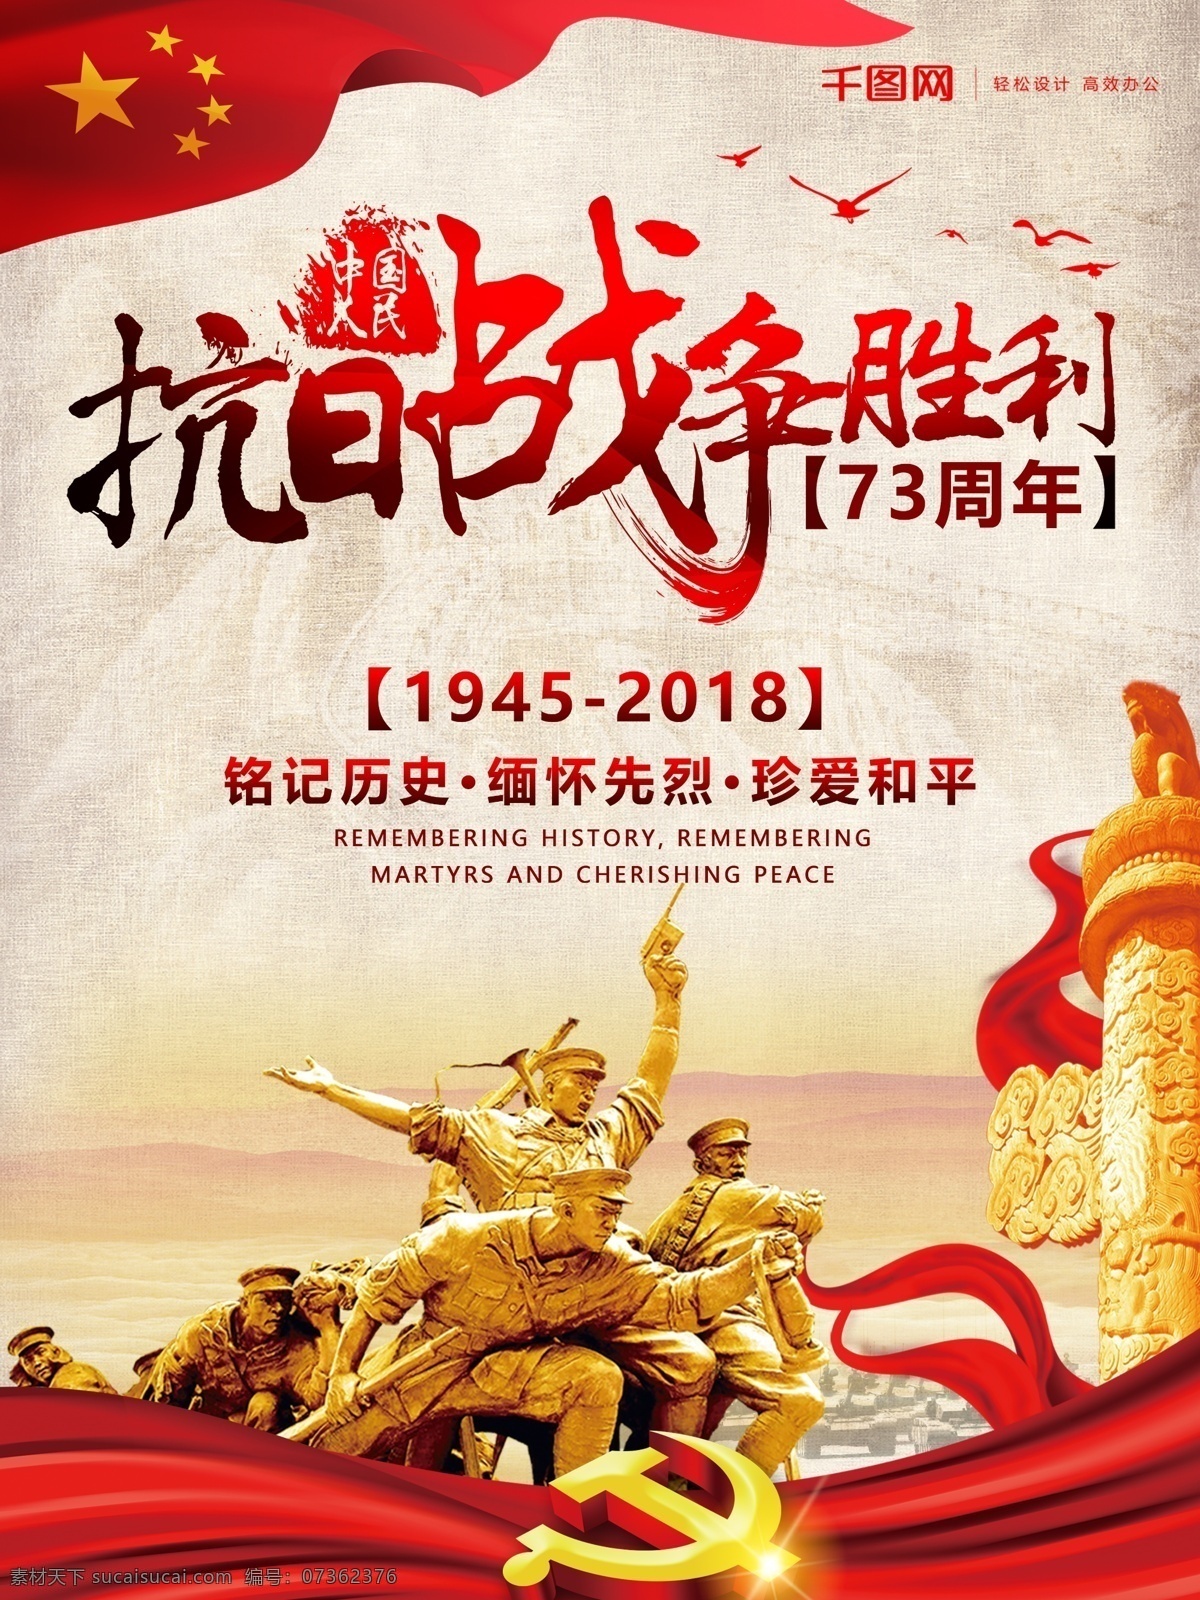 抗战 胜利 周年 海报 抗日 革命 战争 73周年 纪念日